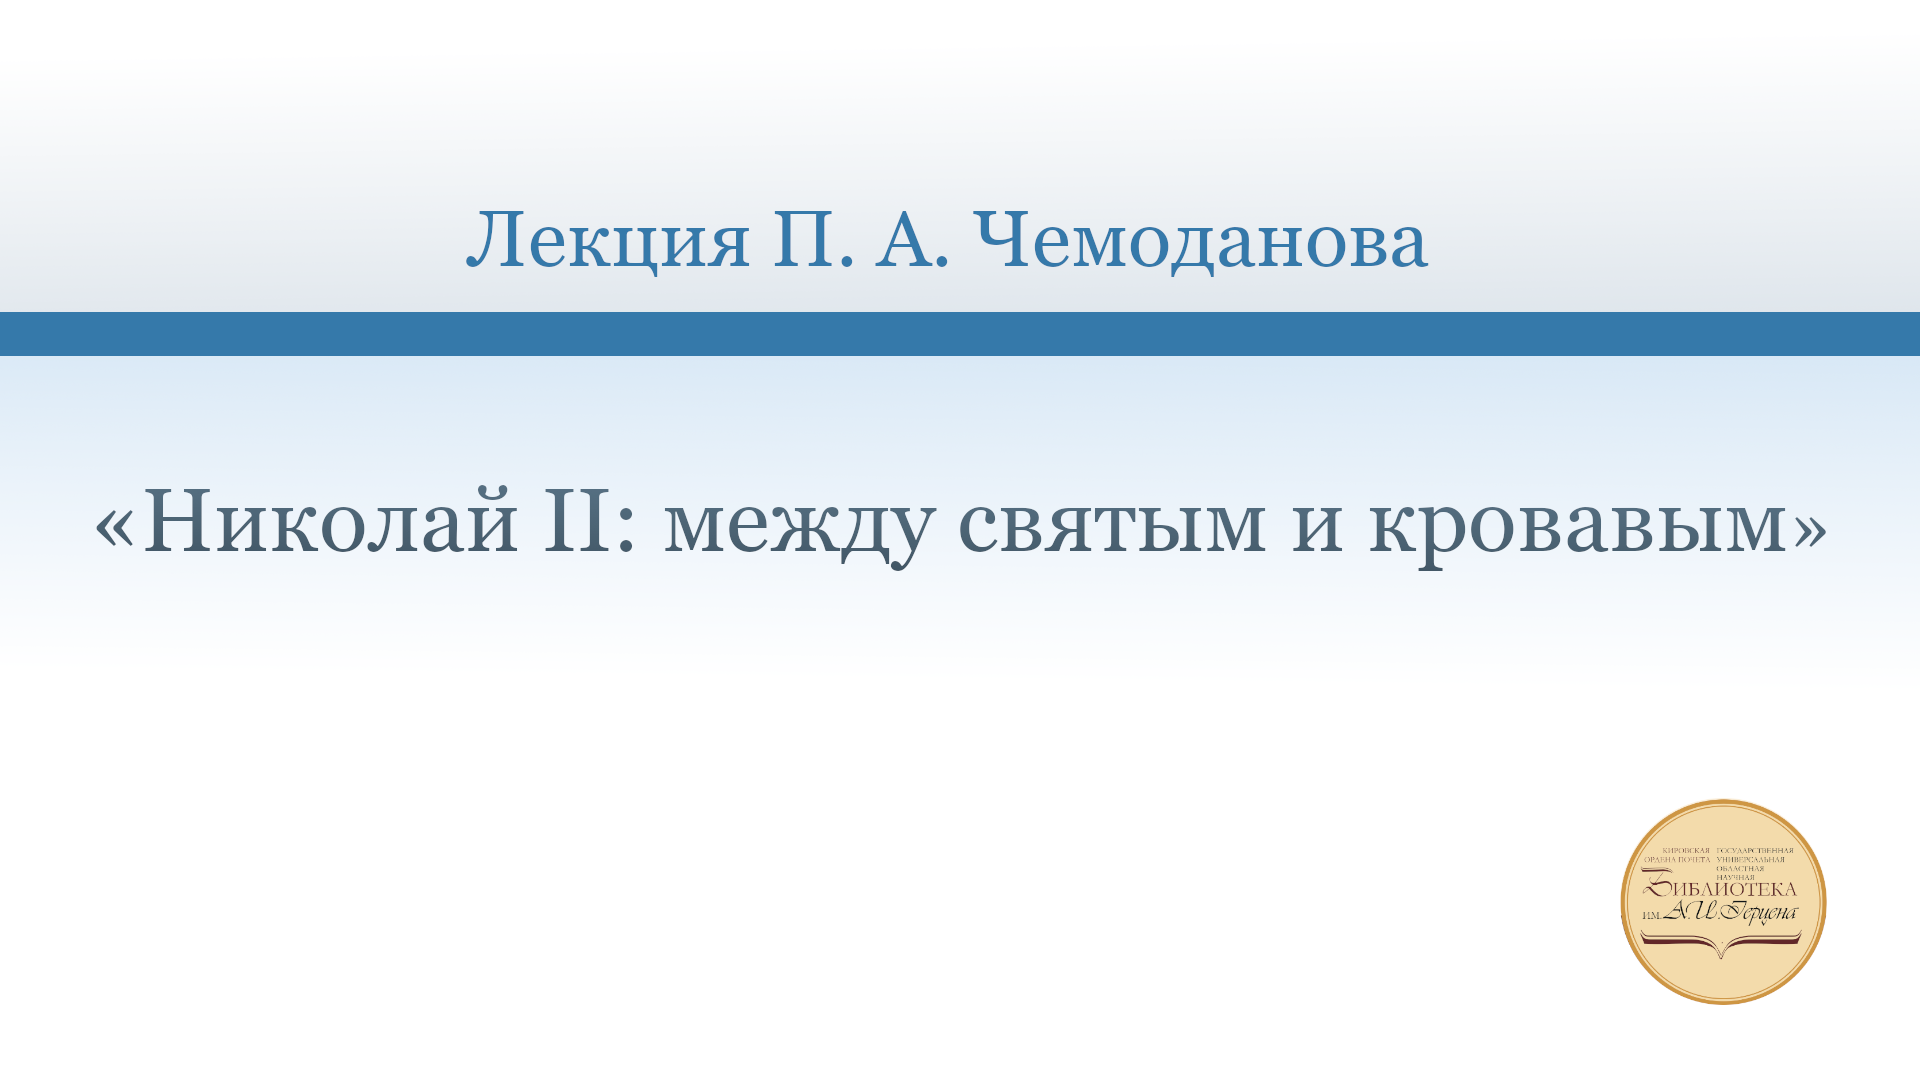 «Николай II: между святым и кровавым». Лекция П. А. Чемоданова